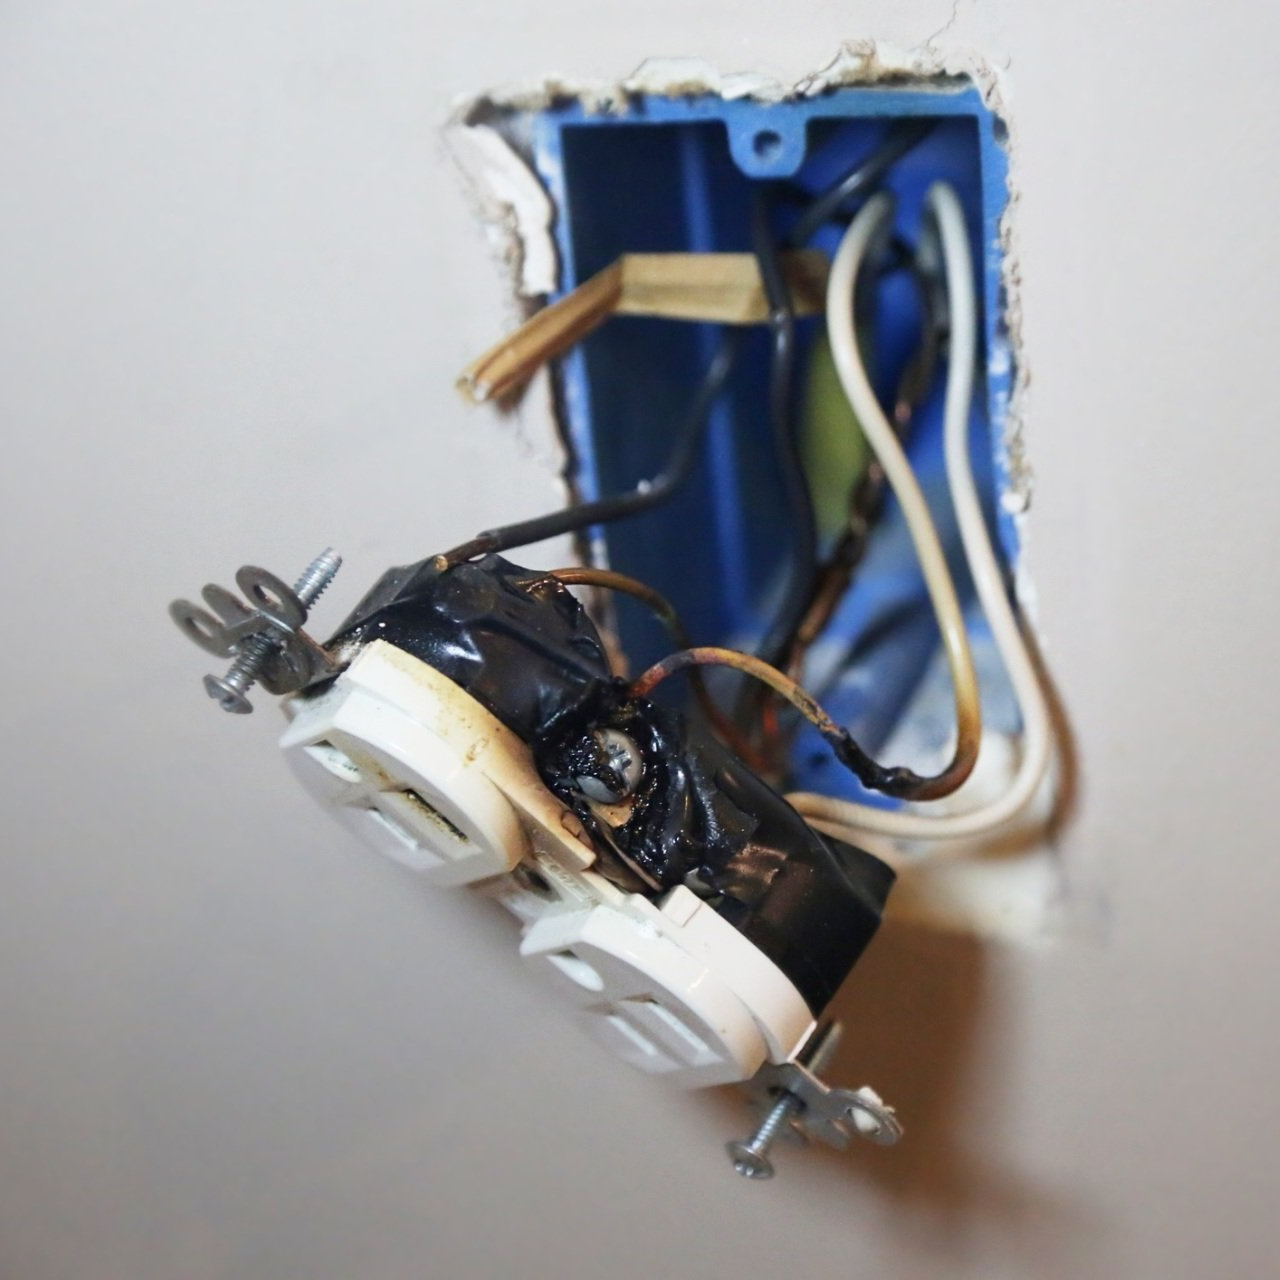 Repair — Close Up of Electrical Socket in Virginia Beach, VA